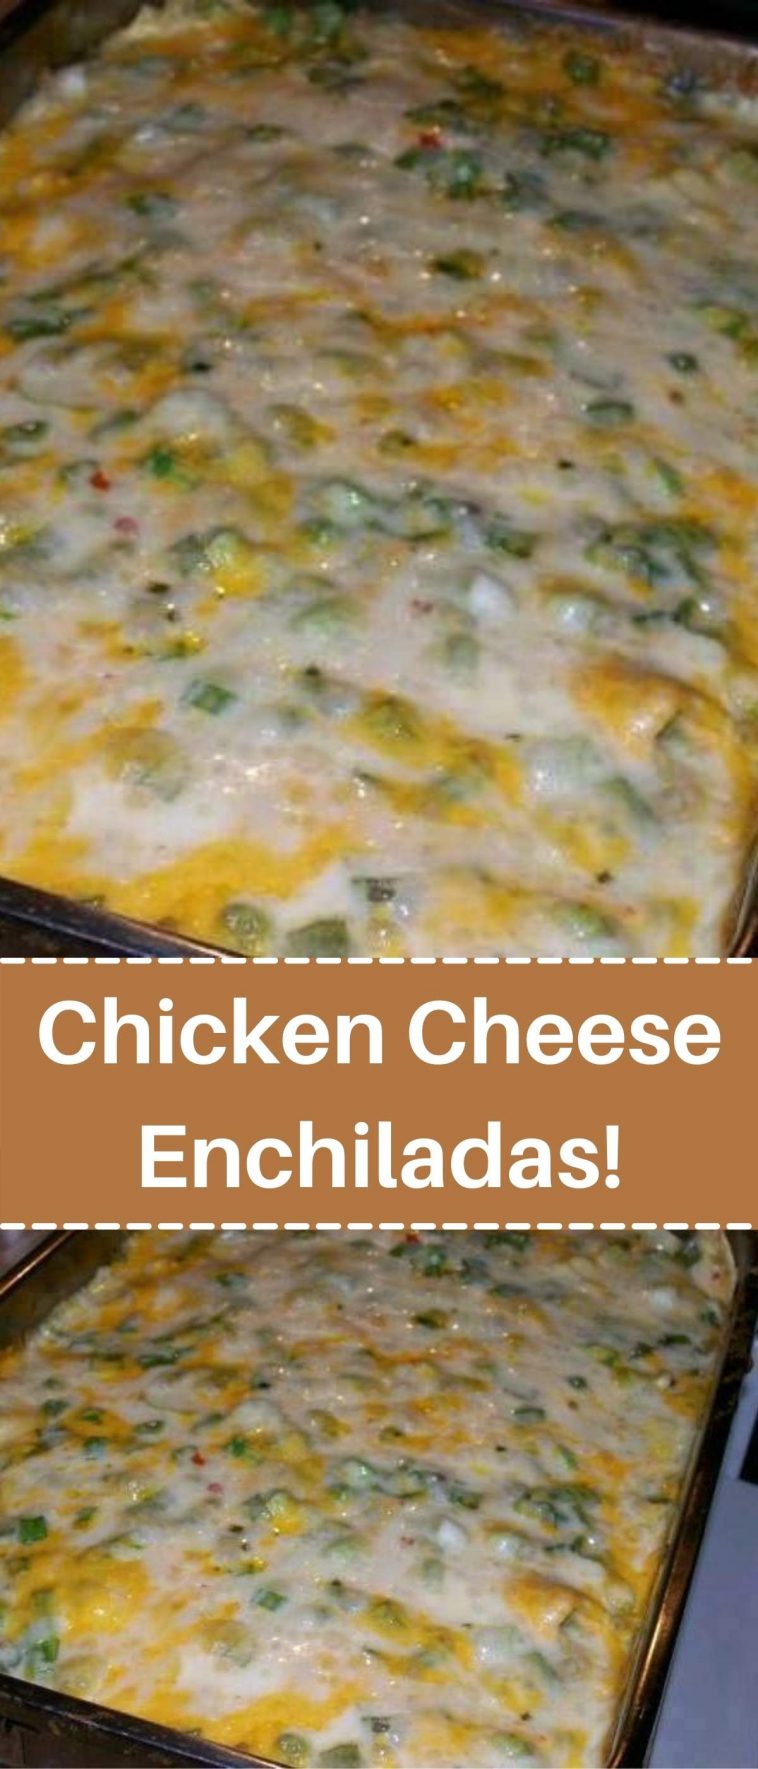 Chicken Cheese Enchiladas!